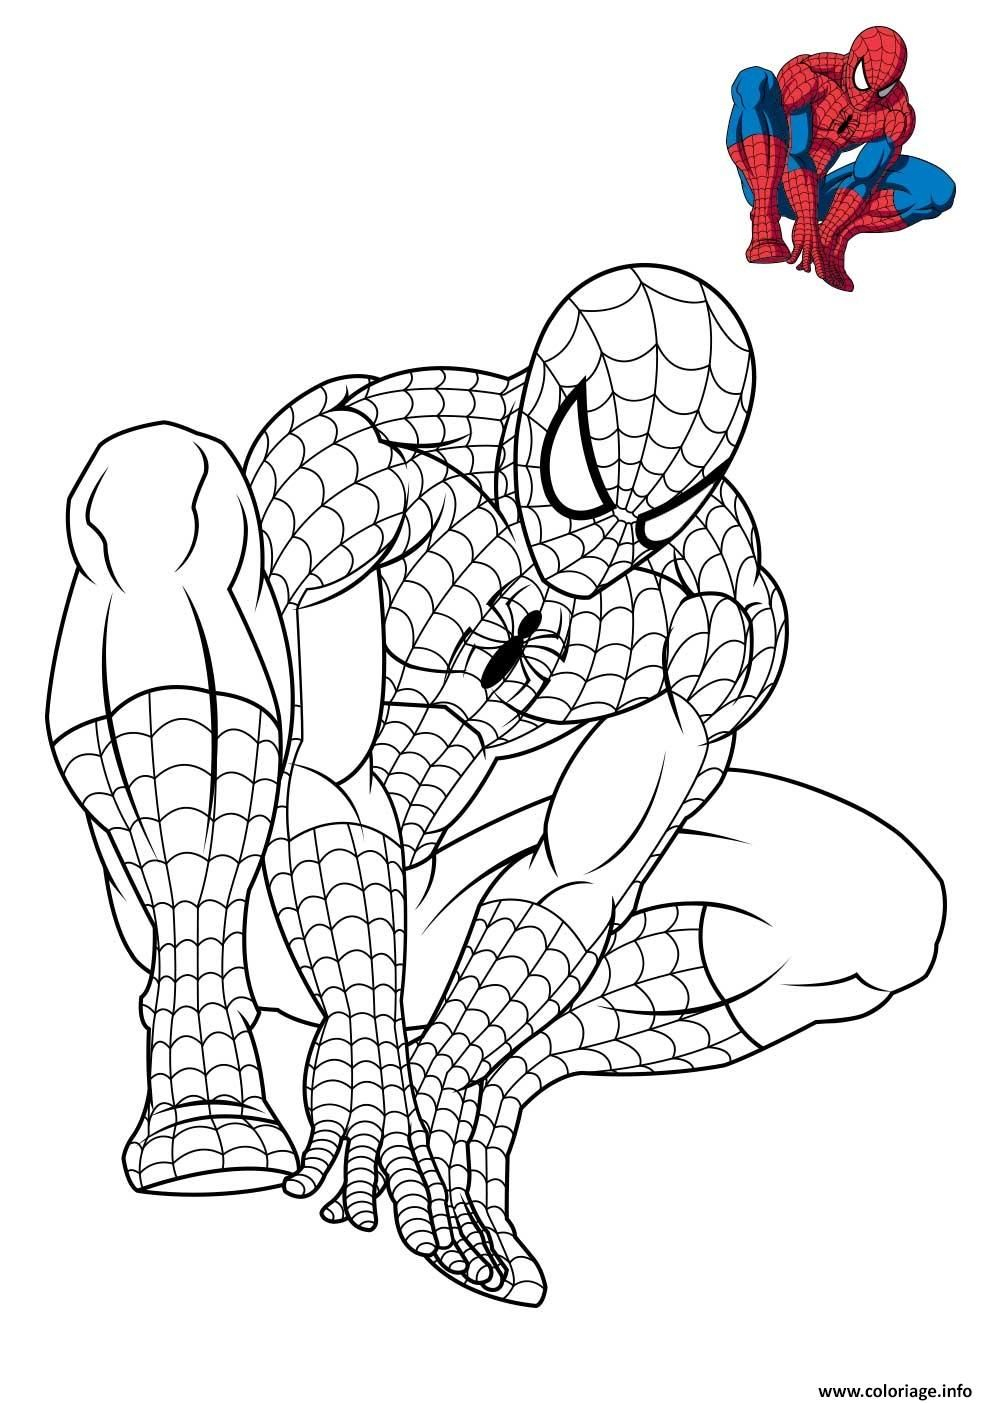 Coloriage Spiderman 3 En Reflexion Dessin À Imprimer tout Masque Spiderman A Imprimer 